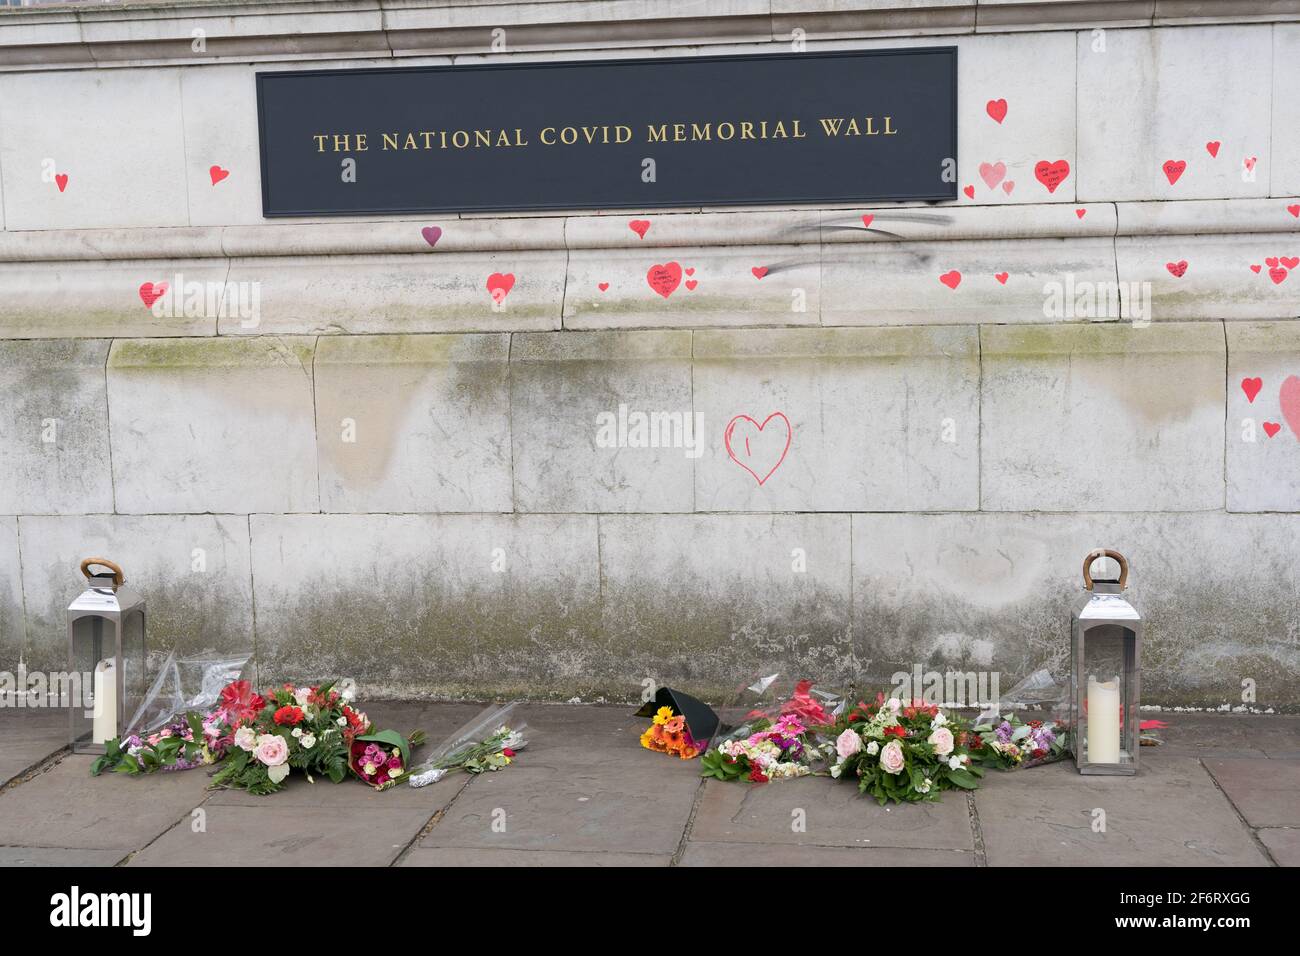 Le mur national du mémorial des Covid, banque sud de Londres, Angleterre Banque D'Images